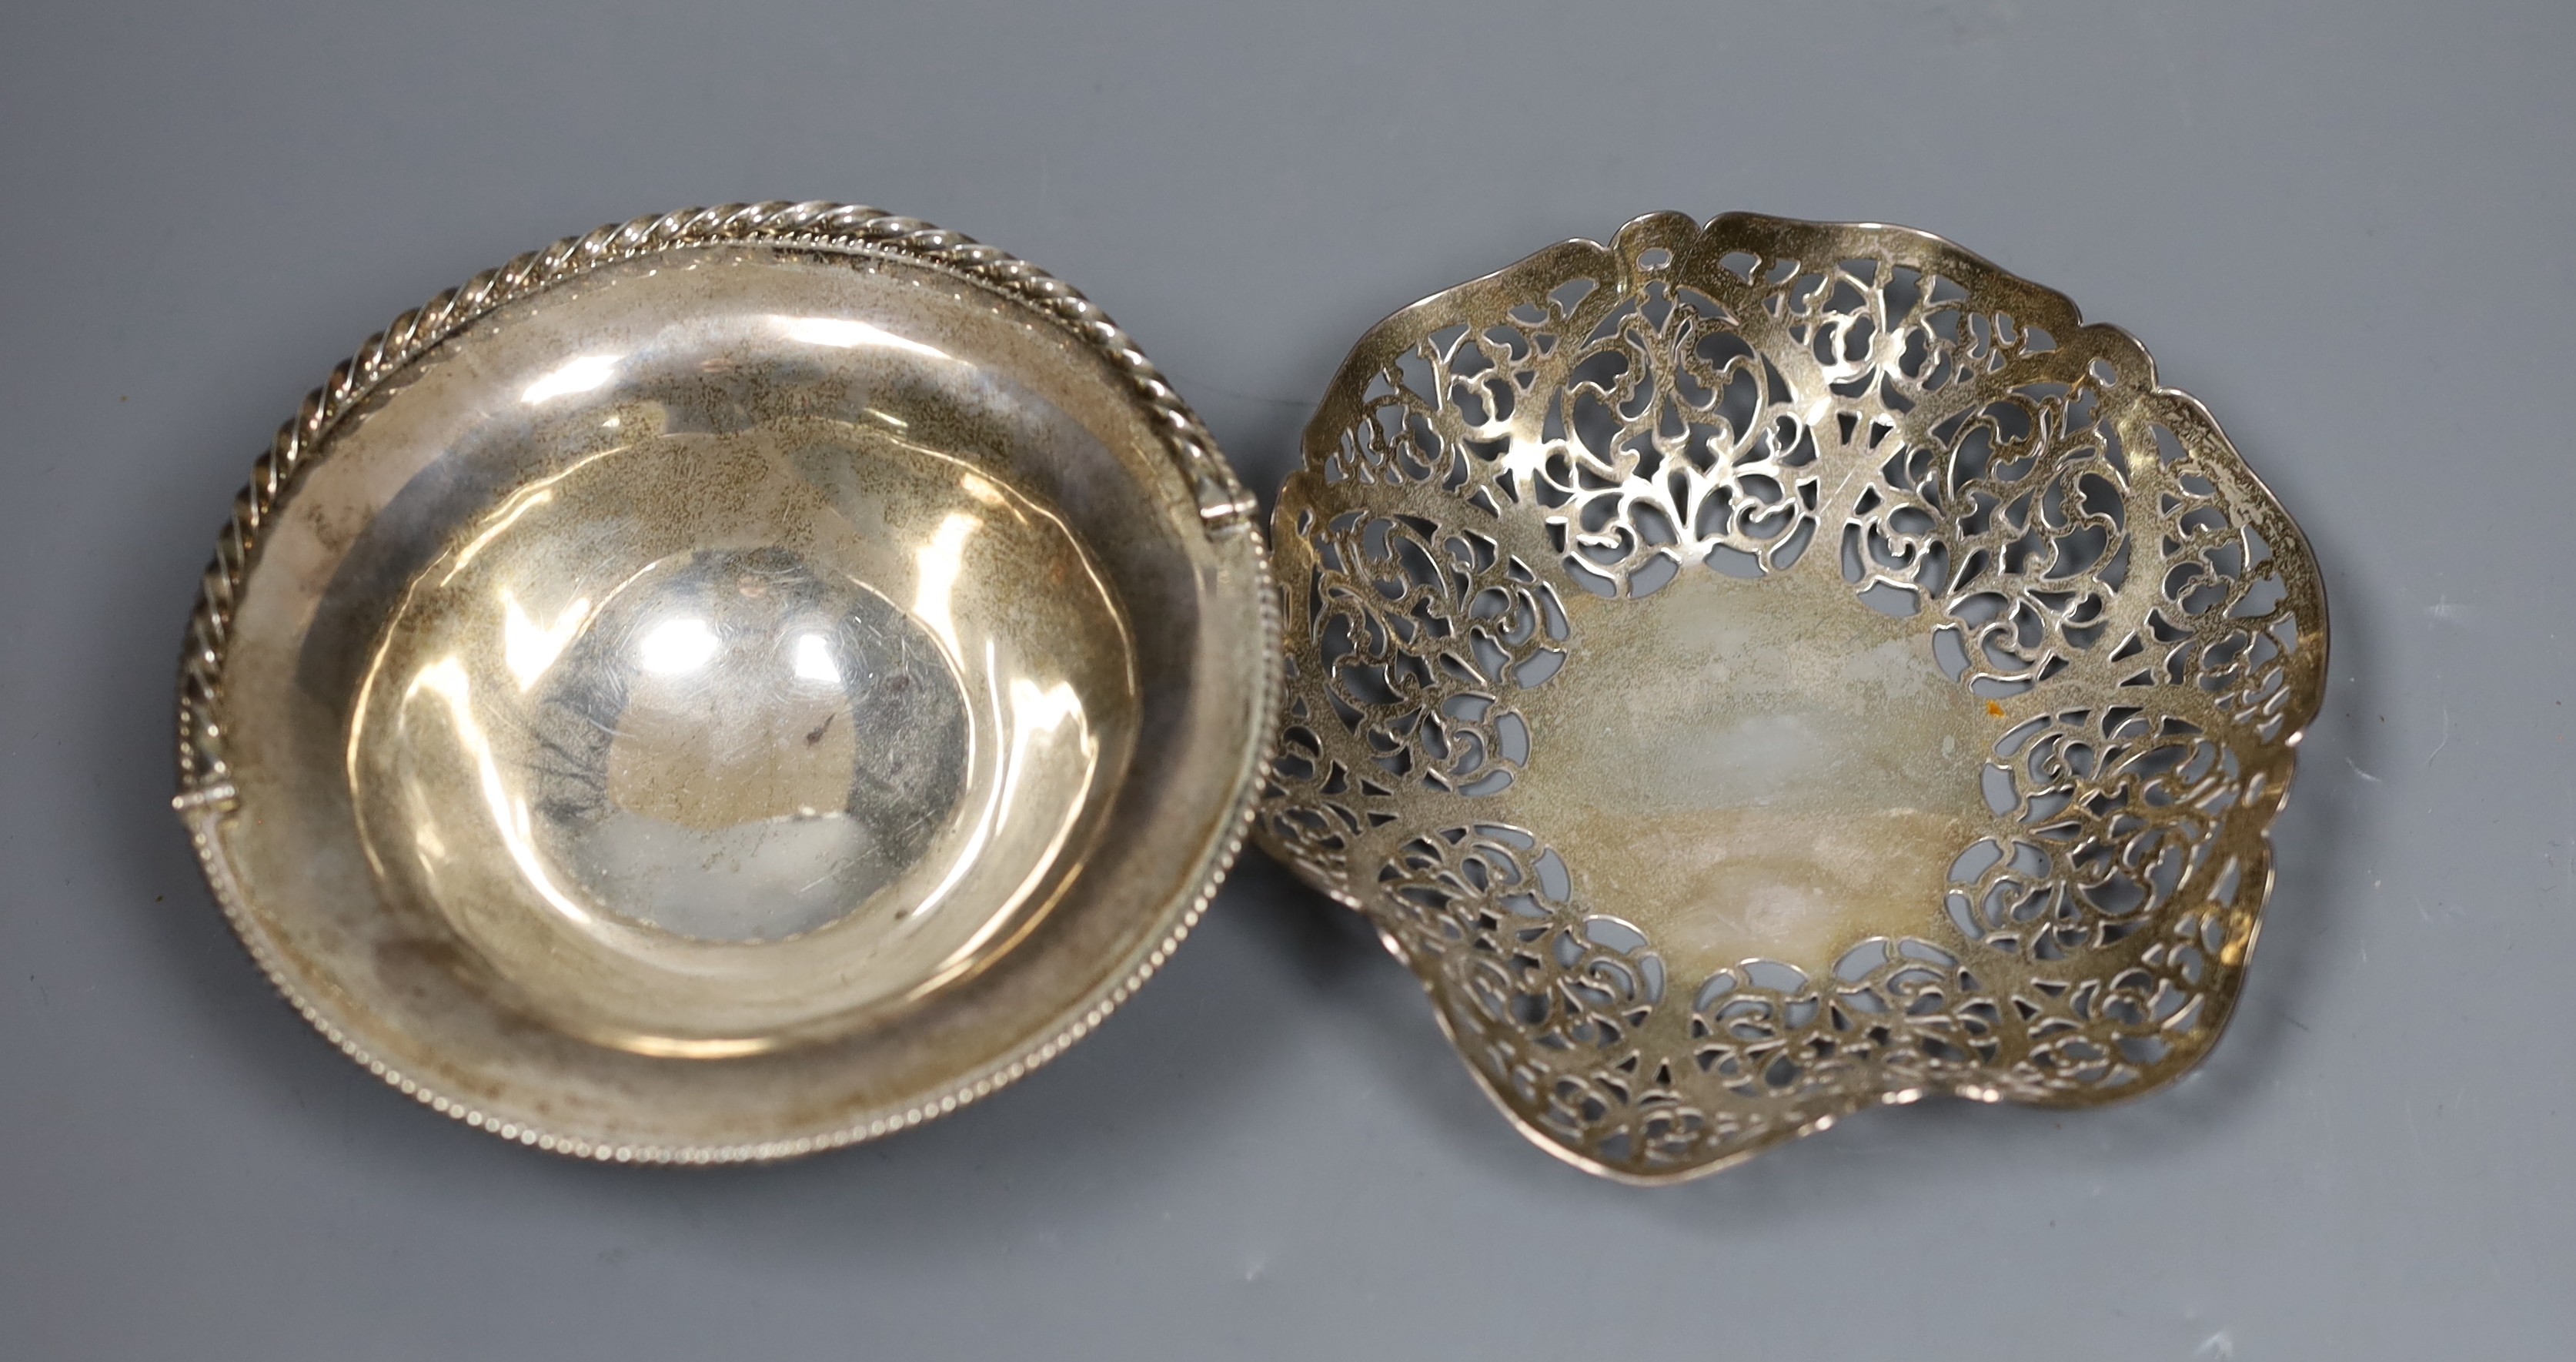 A silver bon bon dish by DRC, London, 1978, 14.1cm and a small silver bonbon basket by Rodney Clive Pettit, London, 1983, 8.3oz.